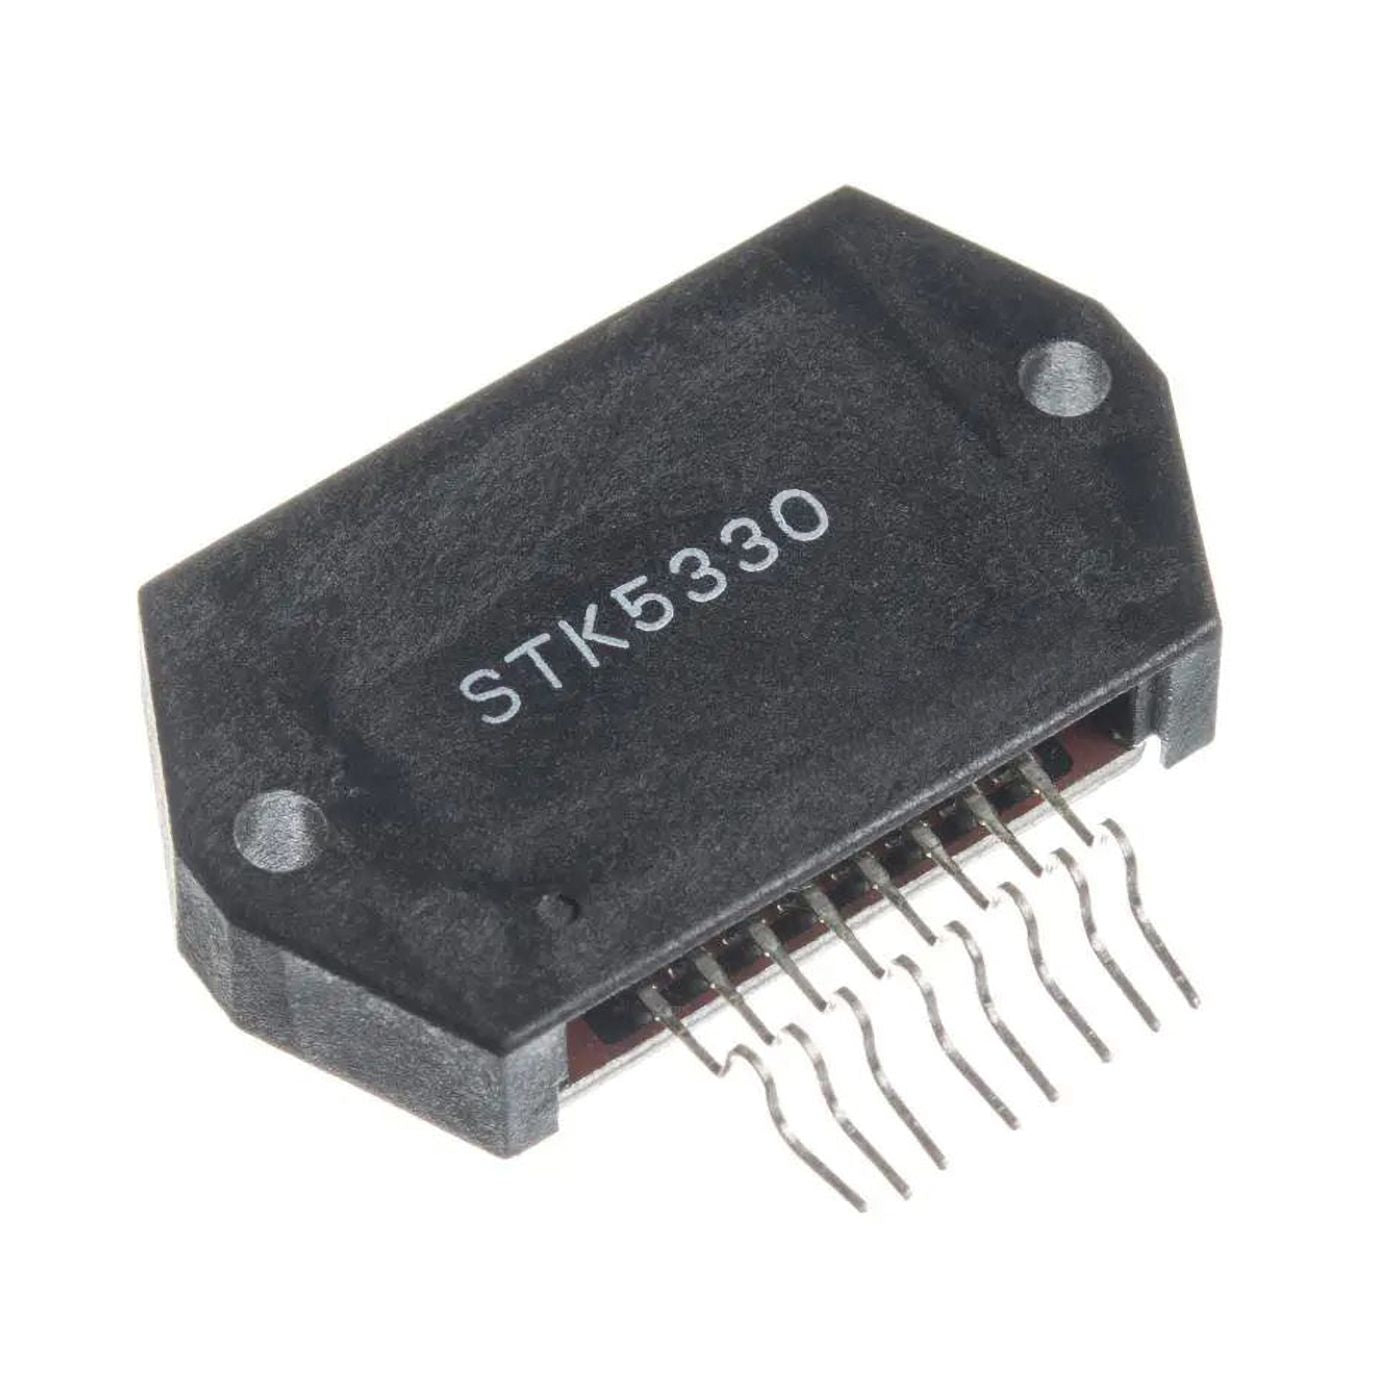 STK5330 componente elettronico, circuito integrato, transistor, 8 contatti